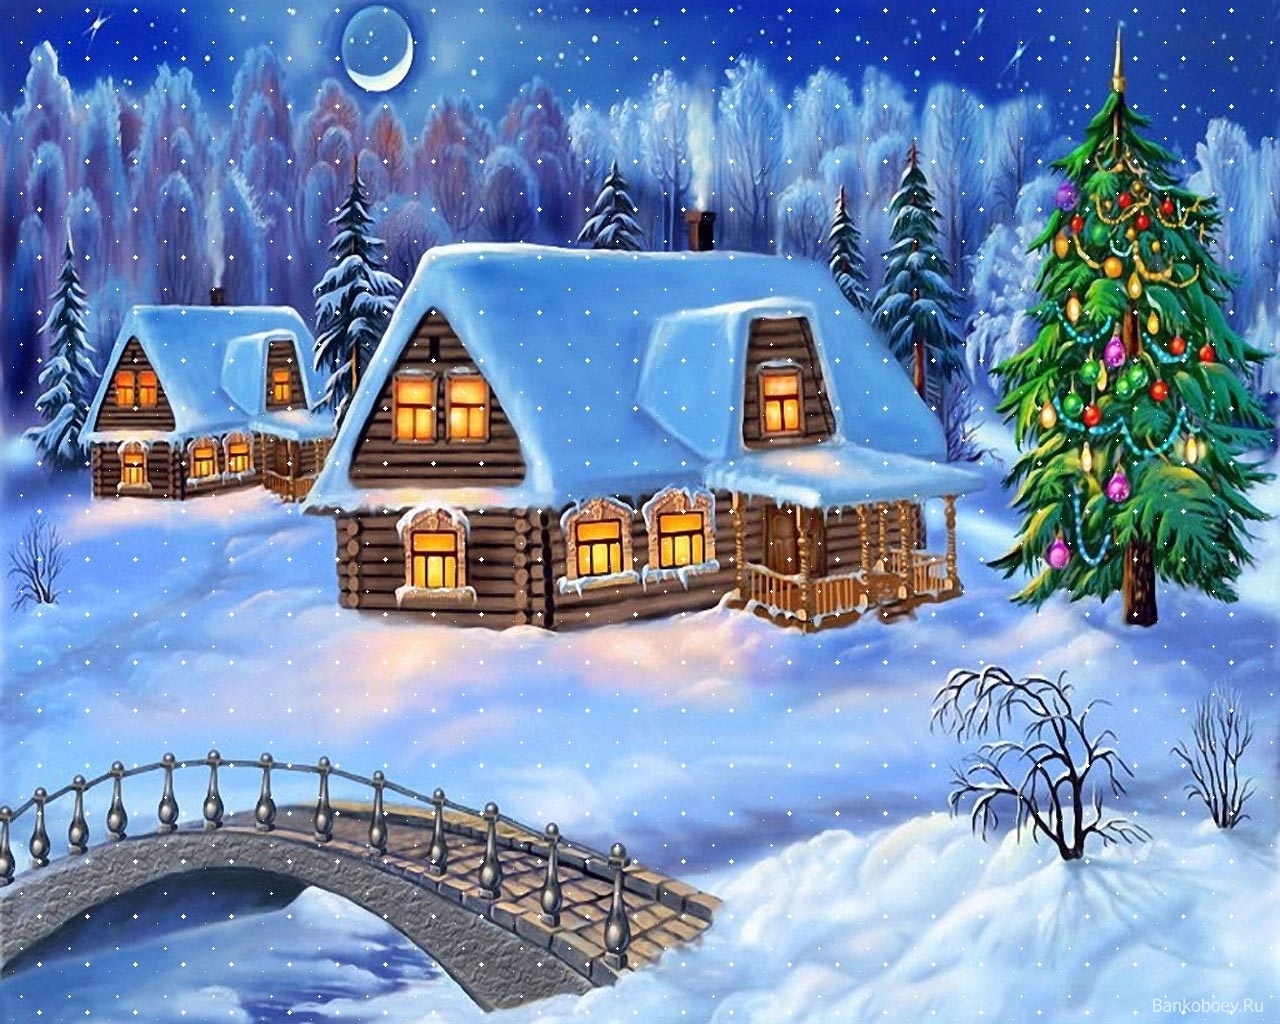 pictures, night, landscape, winter, houses, bridges, snow, blue